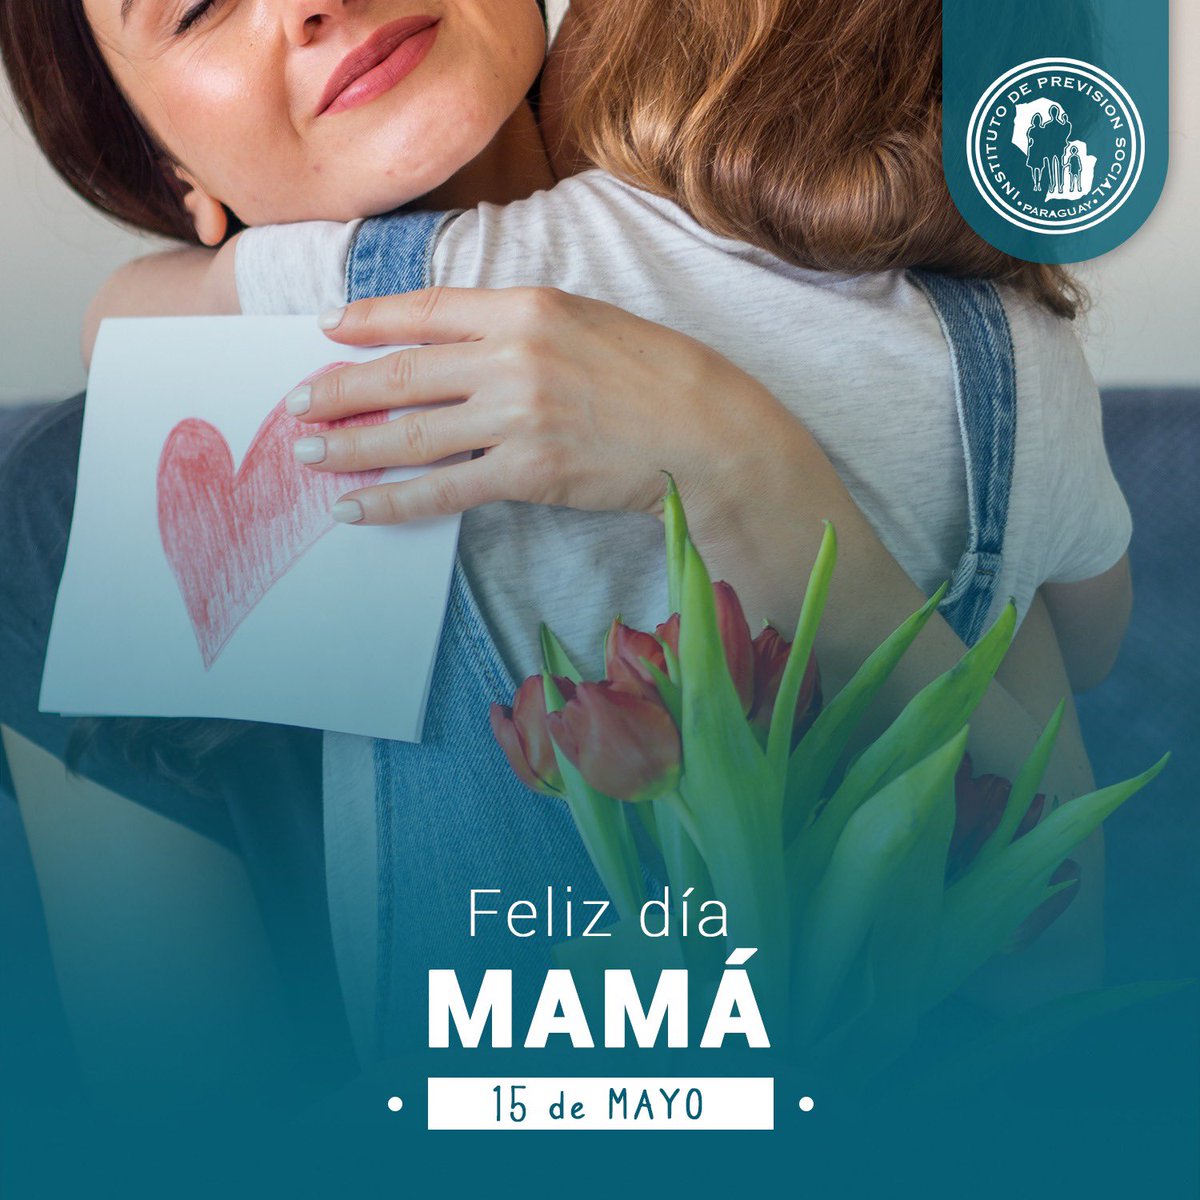 ¡Feliz Día de las Madres! 🌸❤️ Hoy celebramos a las mujeres increíbles que nos llenan de amor y nos guían con su sabiduría. Gracias por todo lo que hacen, por su sacrificio y su amor incondicional. ¡Son nuestras heroínas!